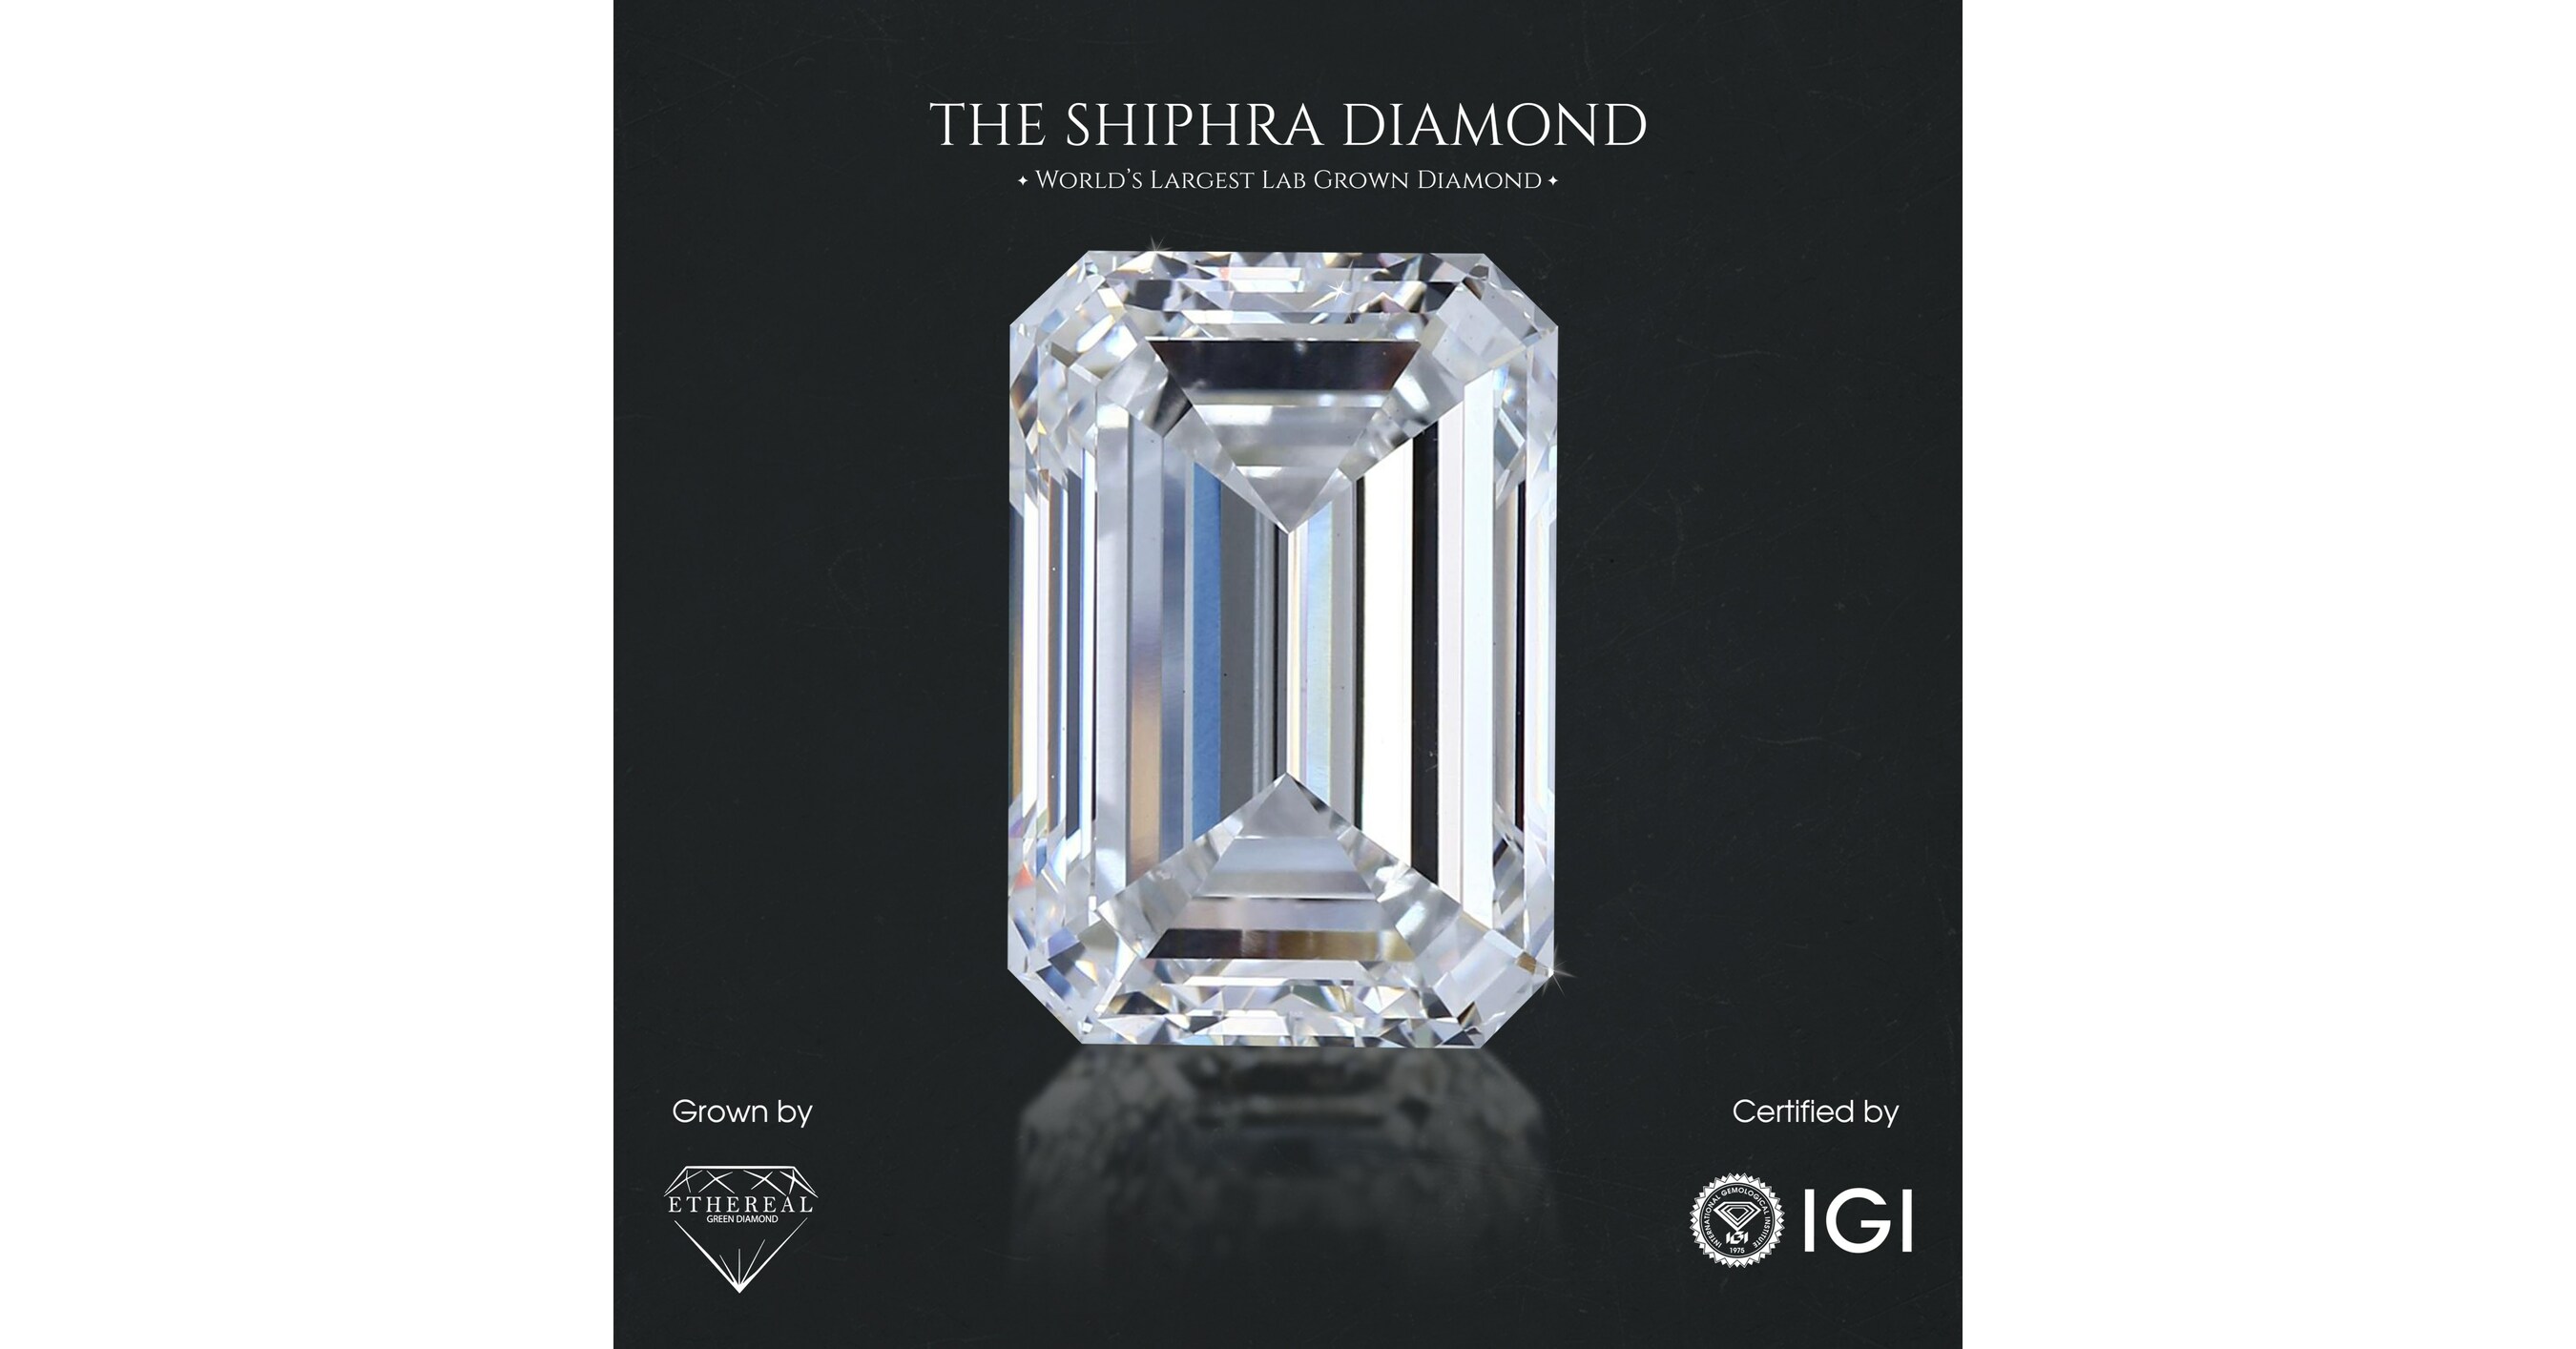 IGI Certifies History Making 50.25 Carat Lab Grown Diamond